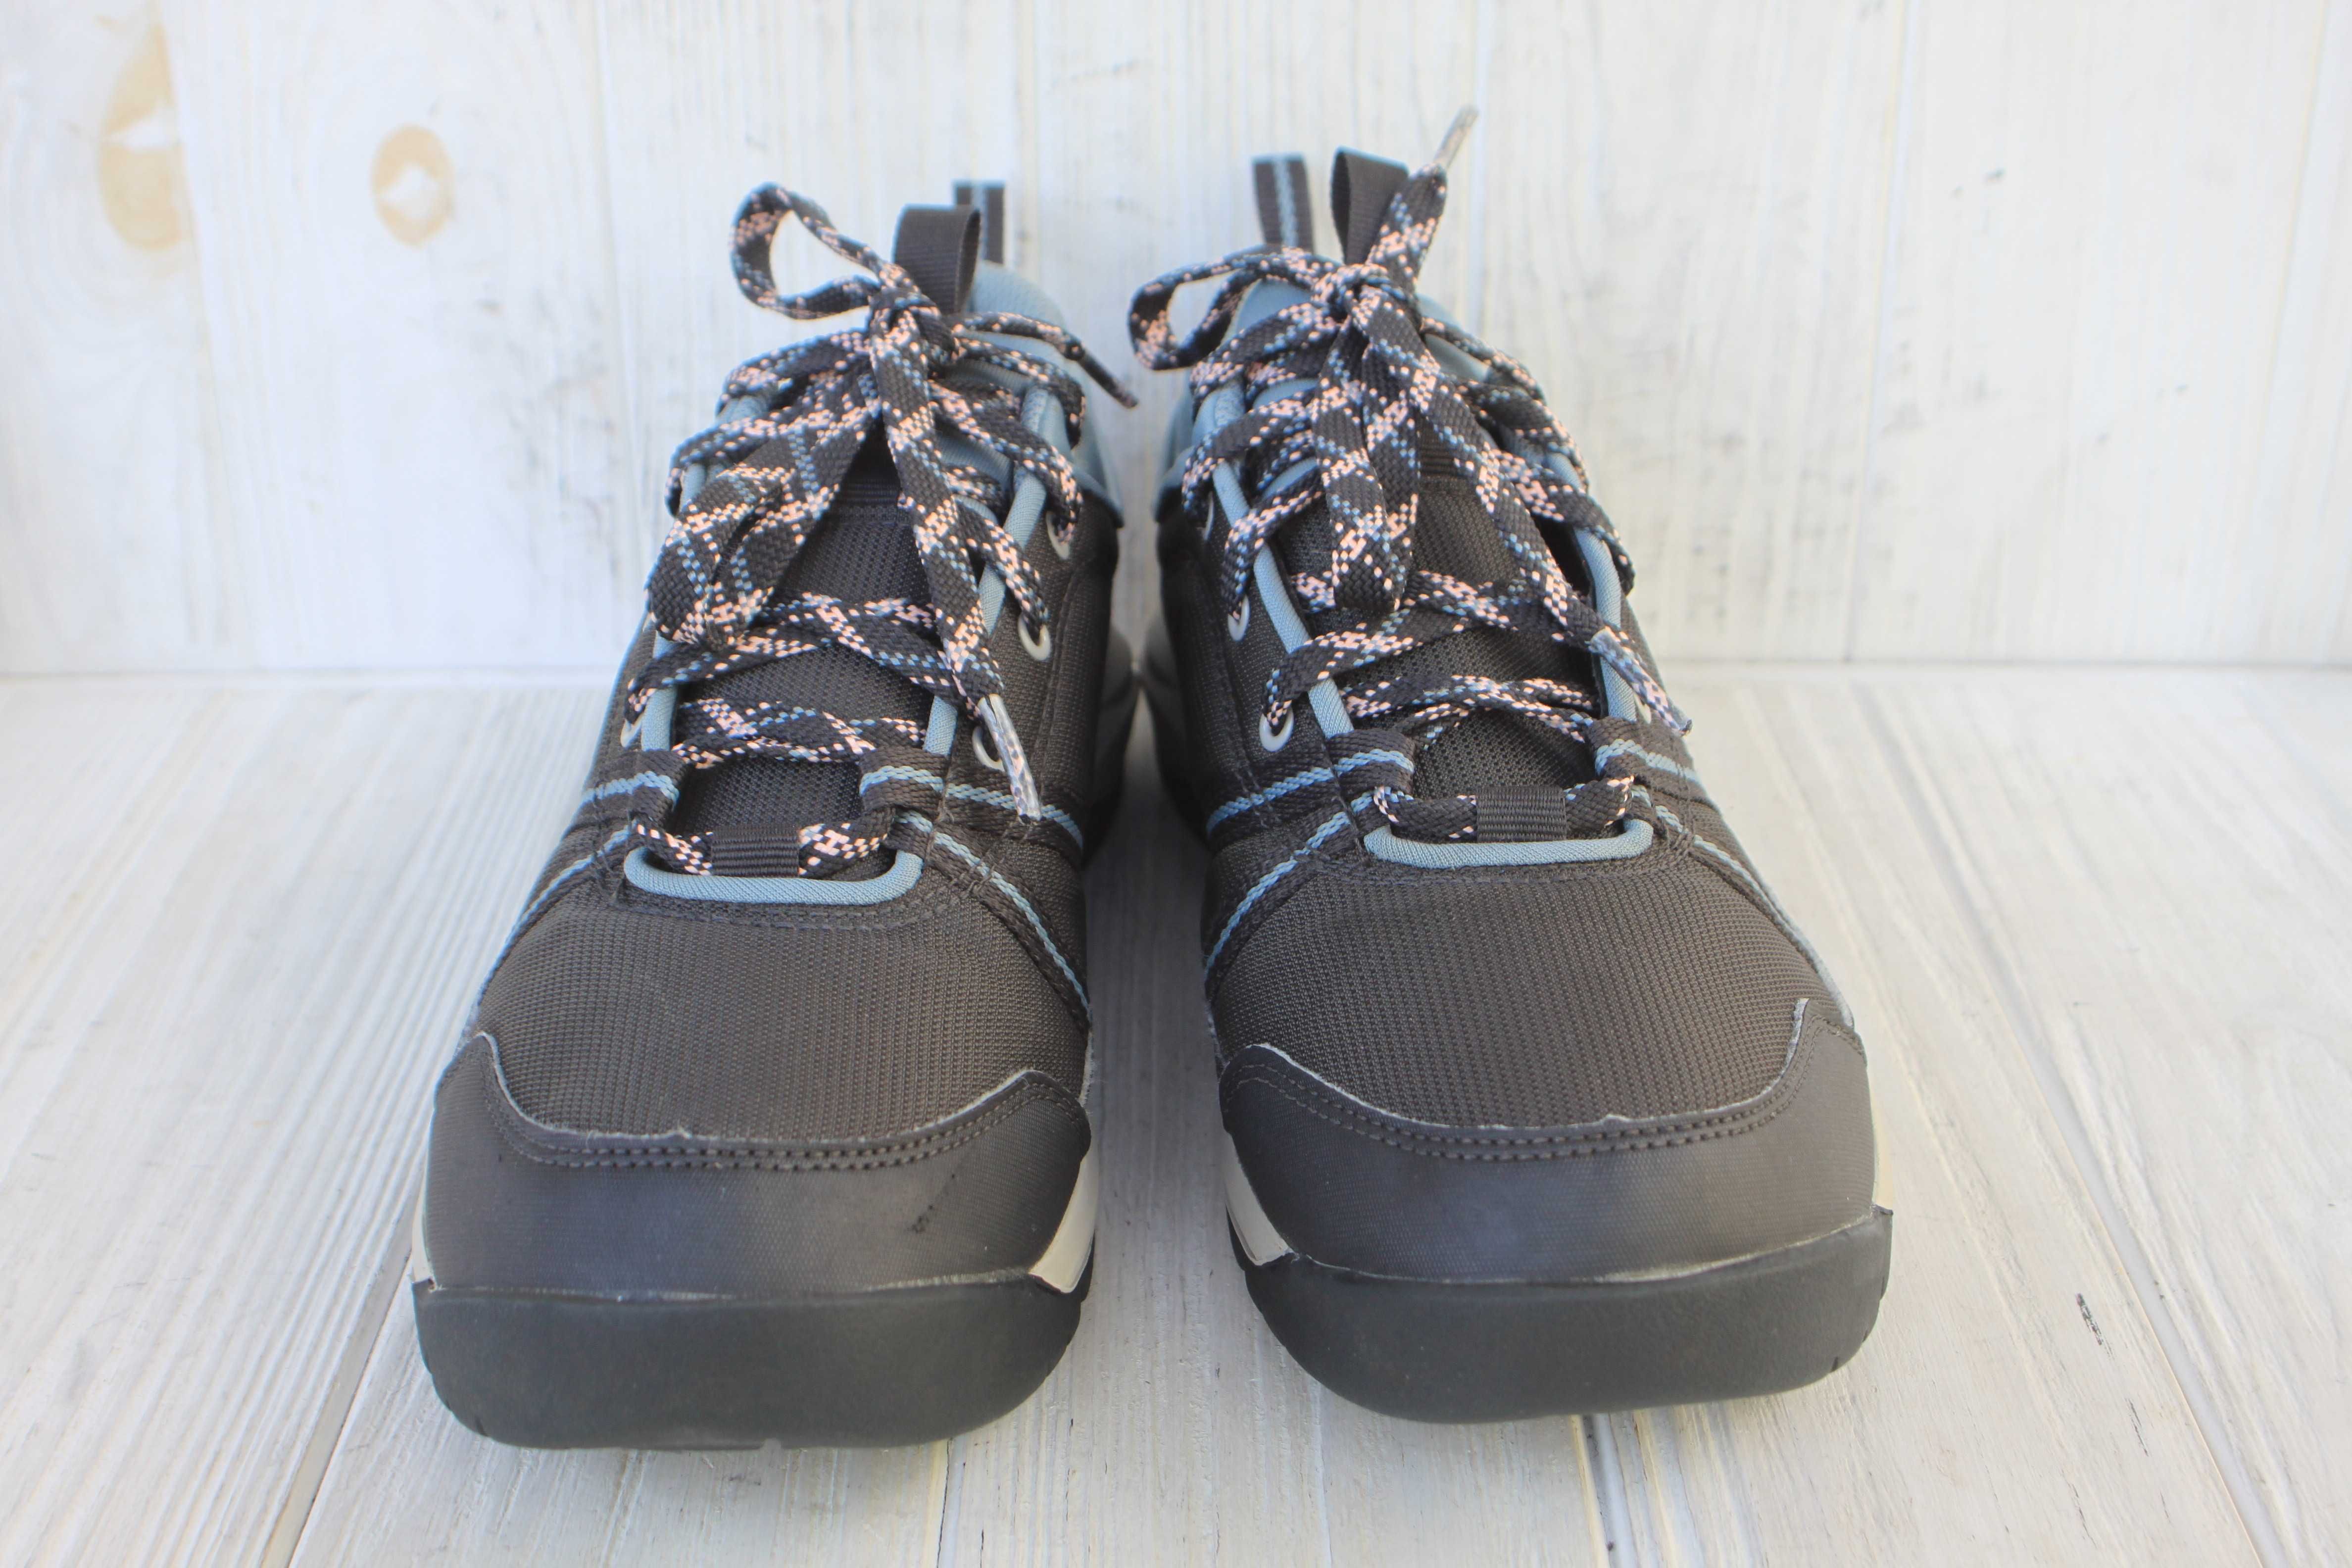 Полу ботинки Quechua Франция 40р непромокаемые кроссовки